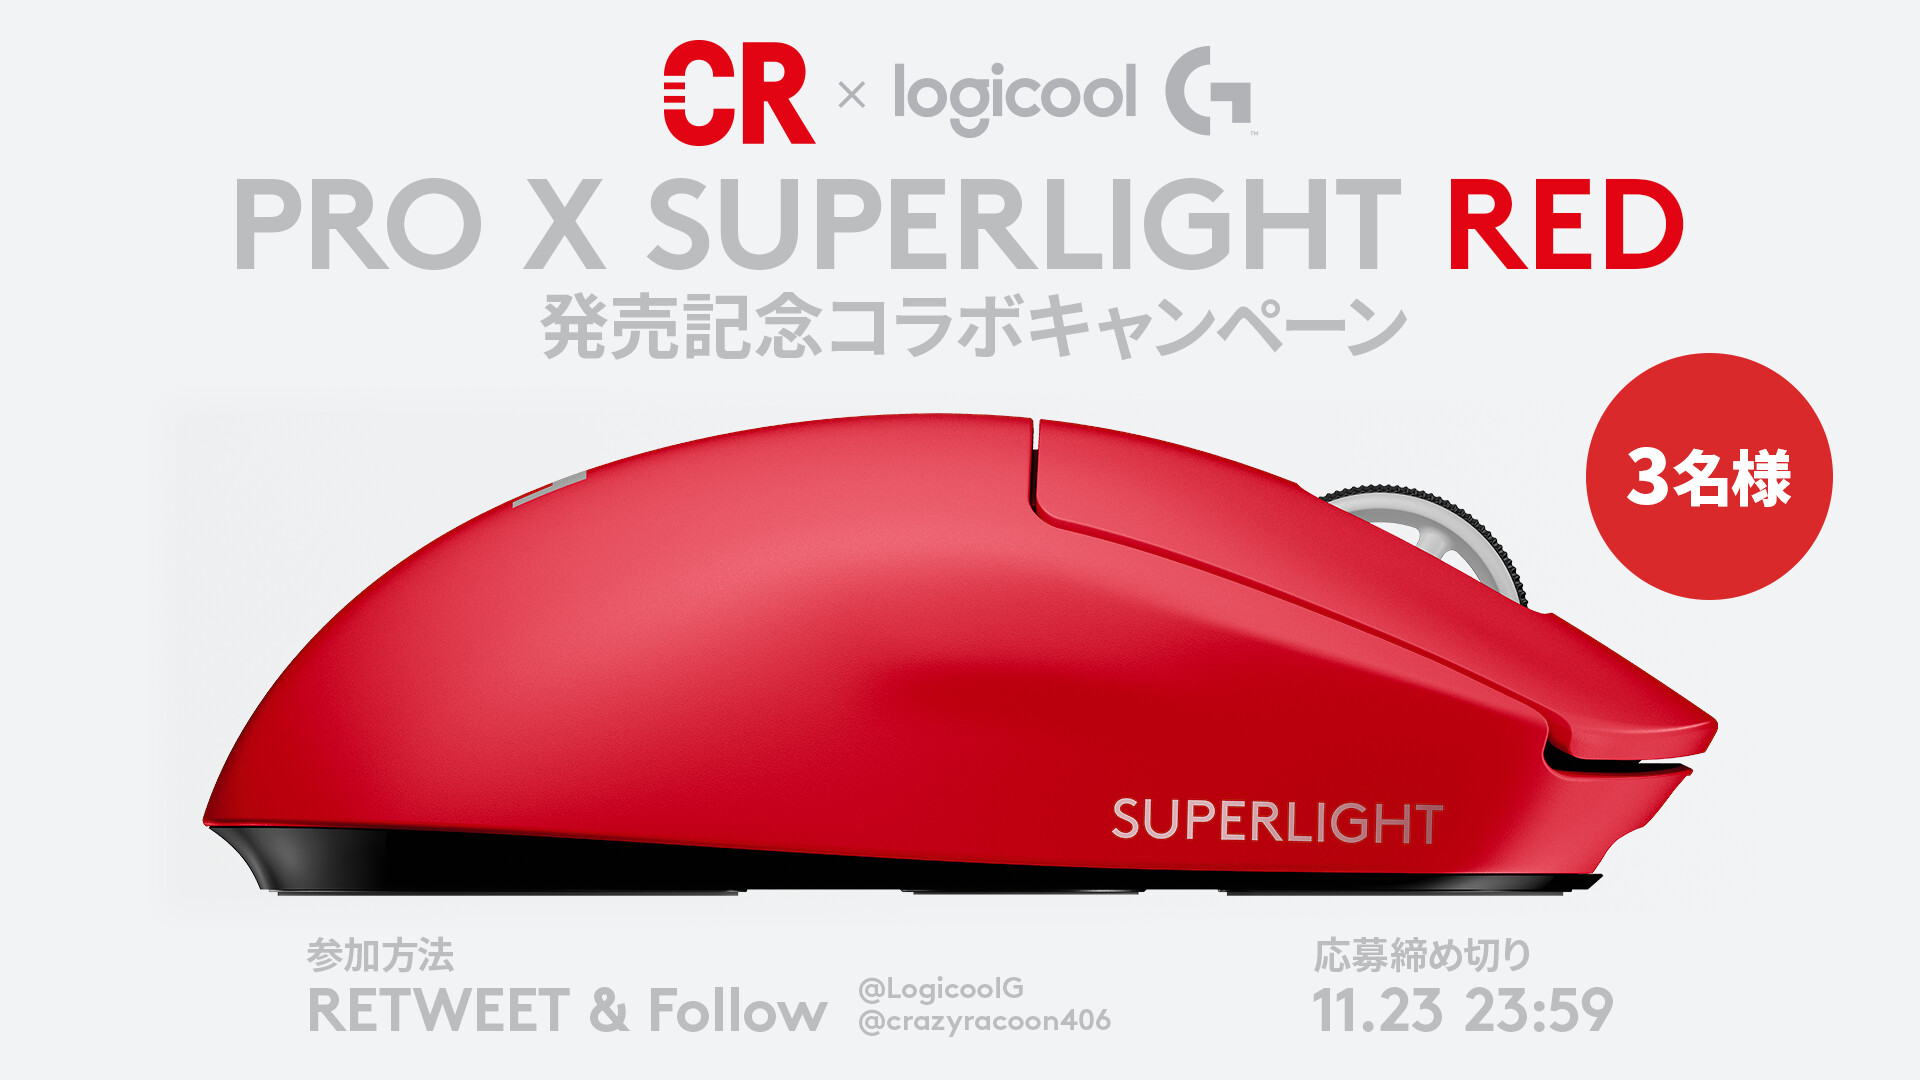 Logicool G Pro X Superlight Red発売記念 コラボキャンペーン 抽選で3名にsuperlightの新色 Redが当たります T Co Ew0hidhgep 応募方法 1 Logicoolg Crazyraccoon406 のフォロー 2 本ツイートをrt 締め切り 11 23 水